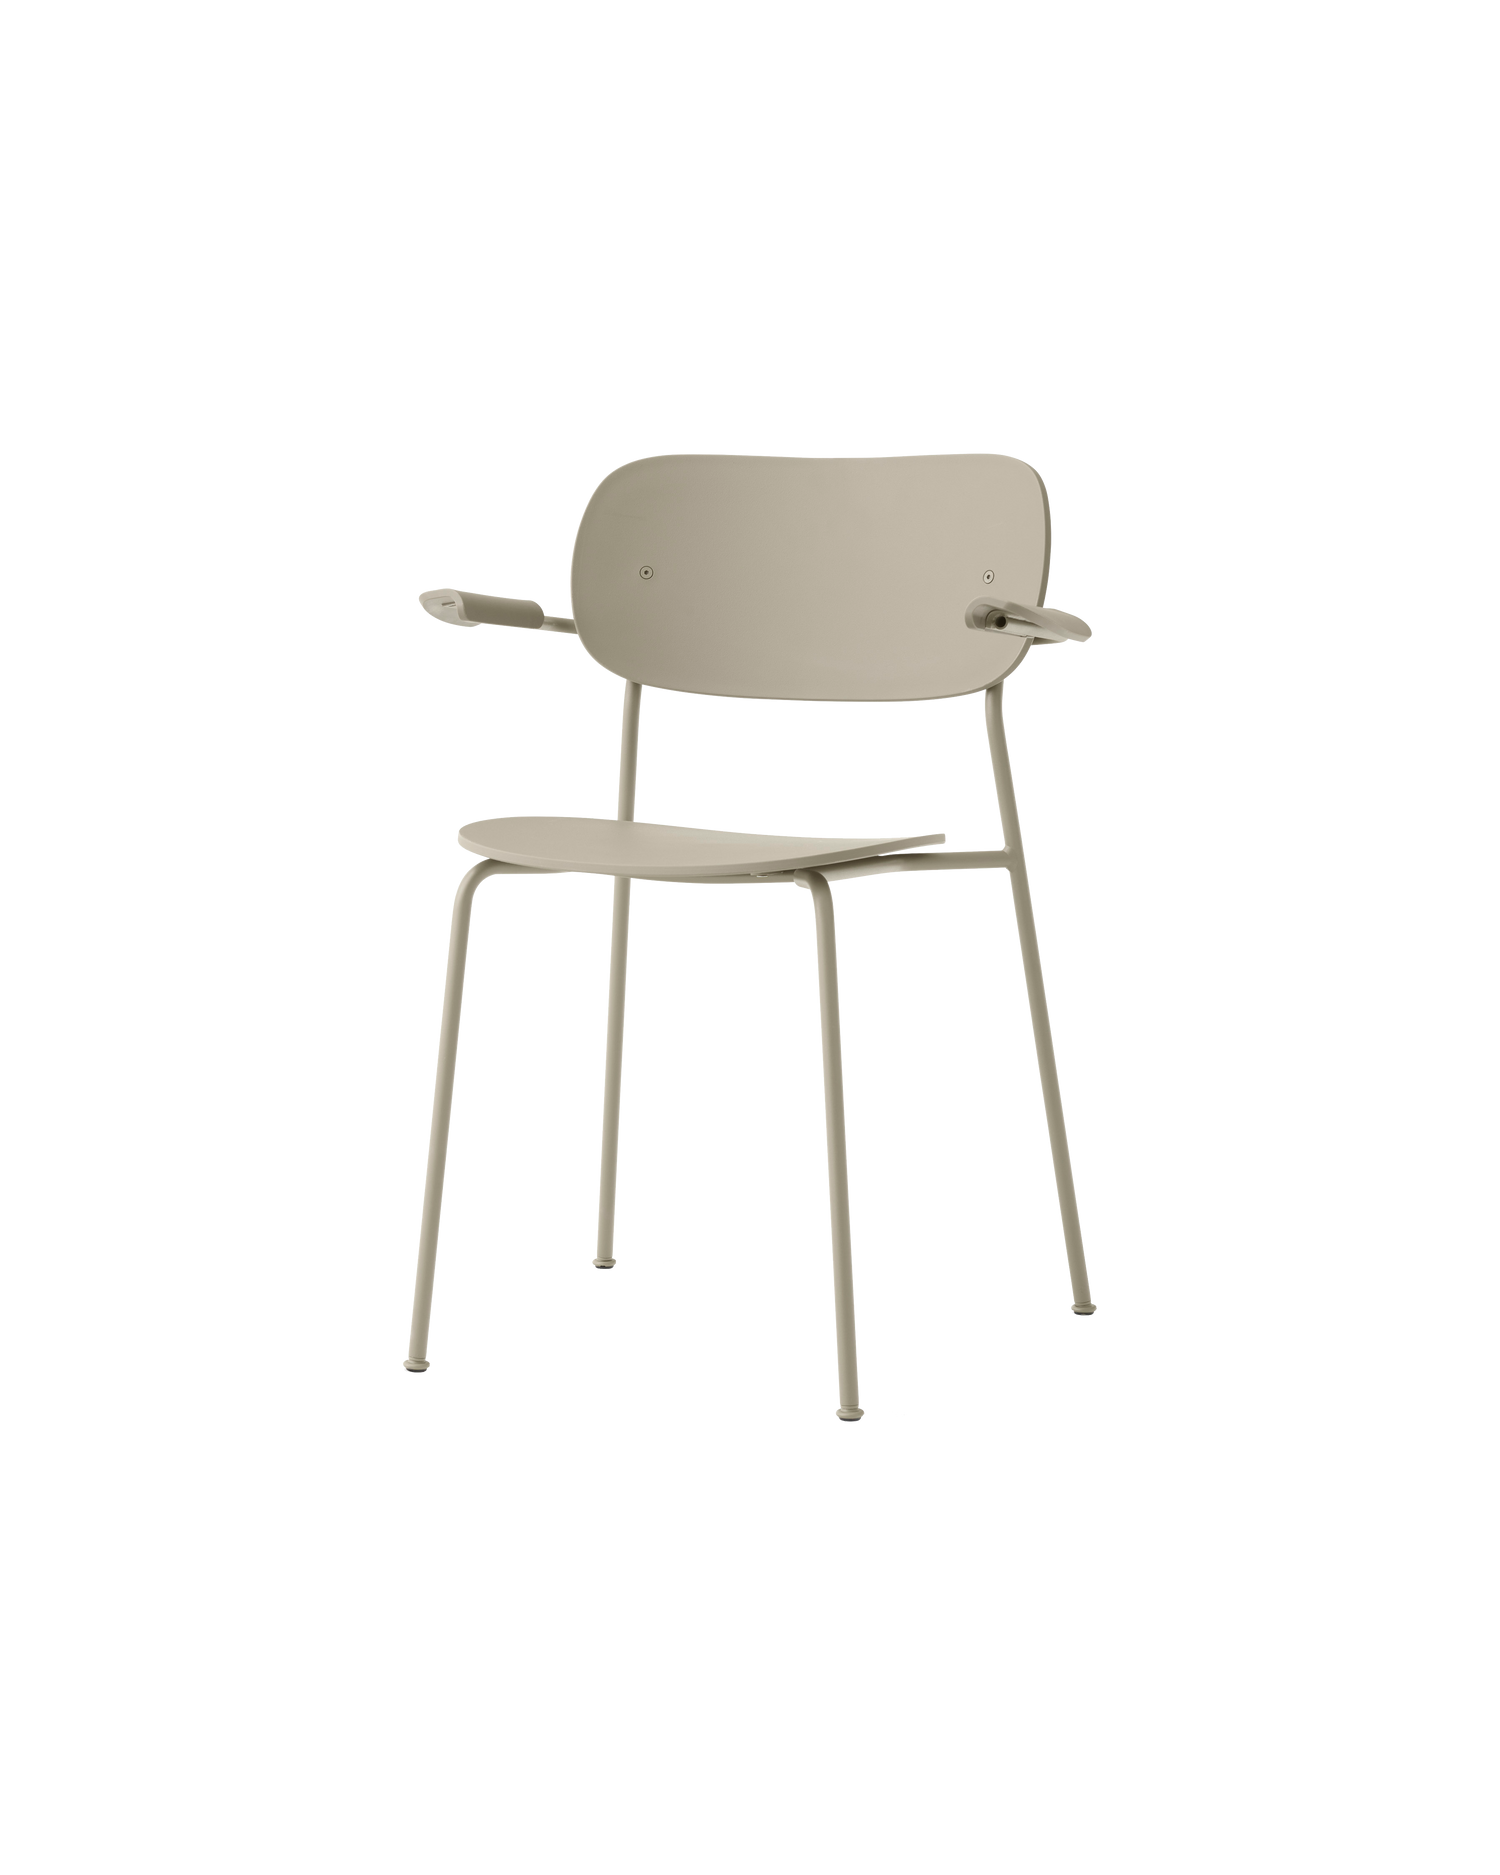 Utemøbel: Spisestolen Co Dining Chair Outdoor fra Audo Copenhagen er en stilren spisestol i værbestandige materialer med et tiltalende design og god sittekomfort.